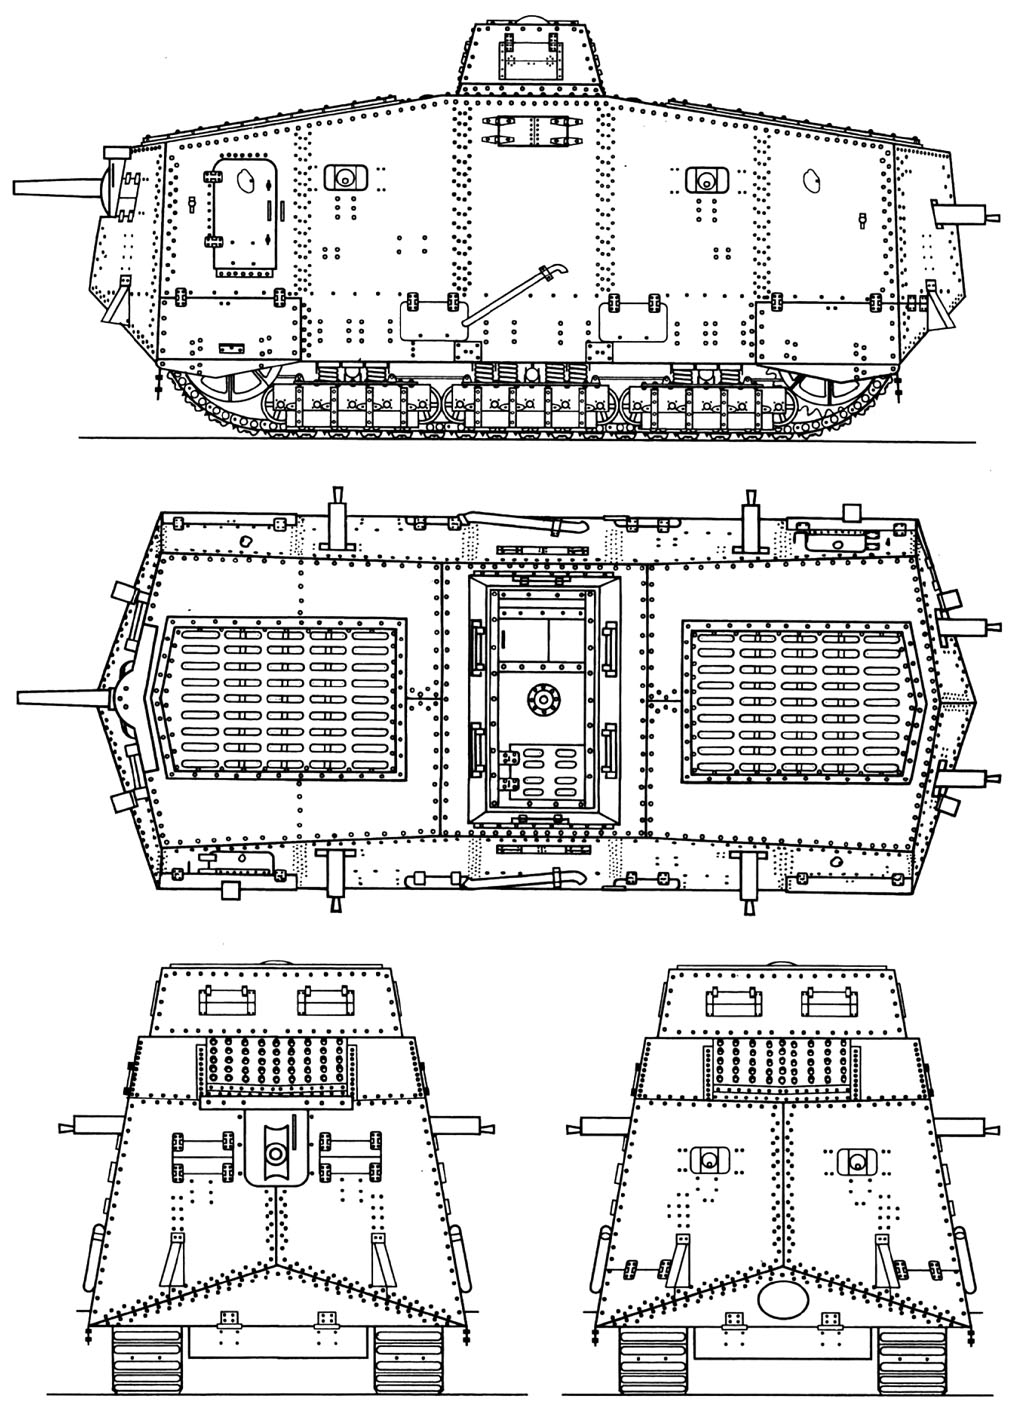 A7V blueprint